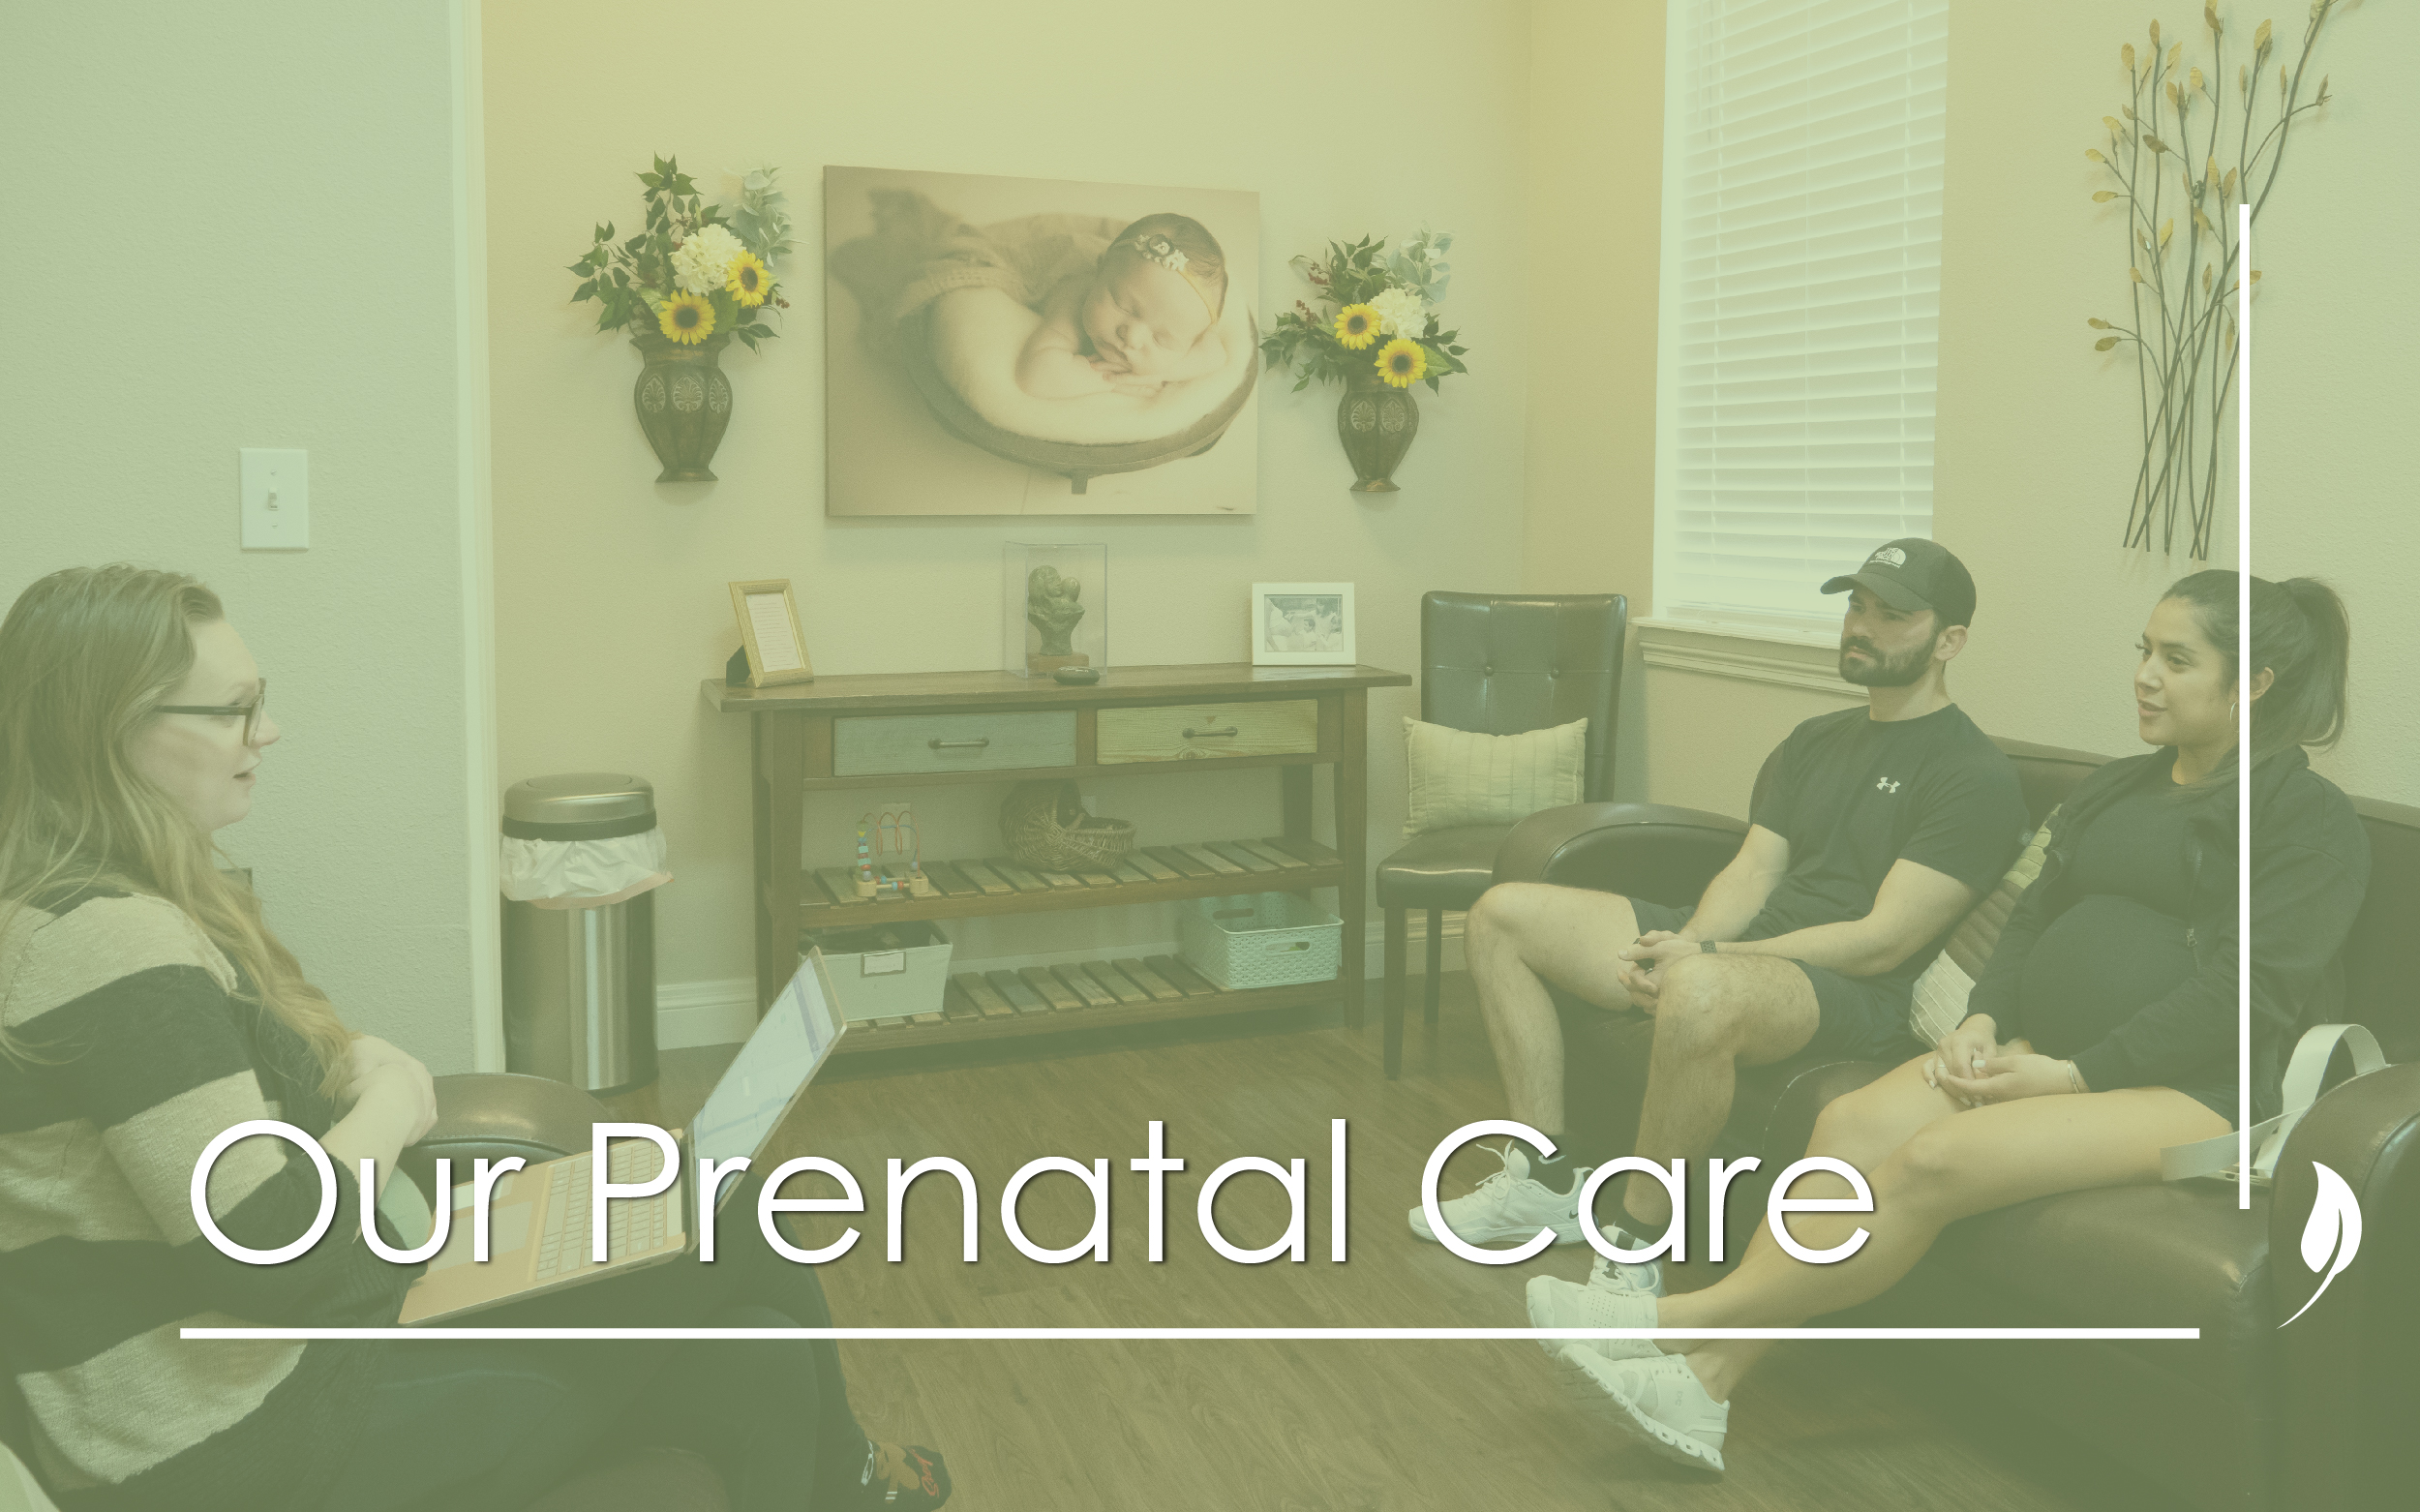 Our Prenatal Care